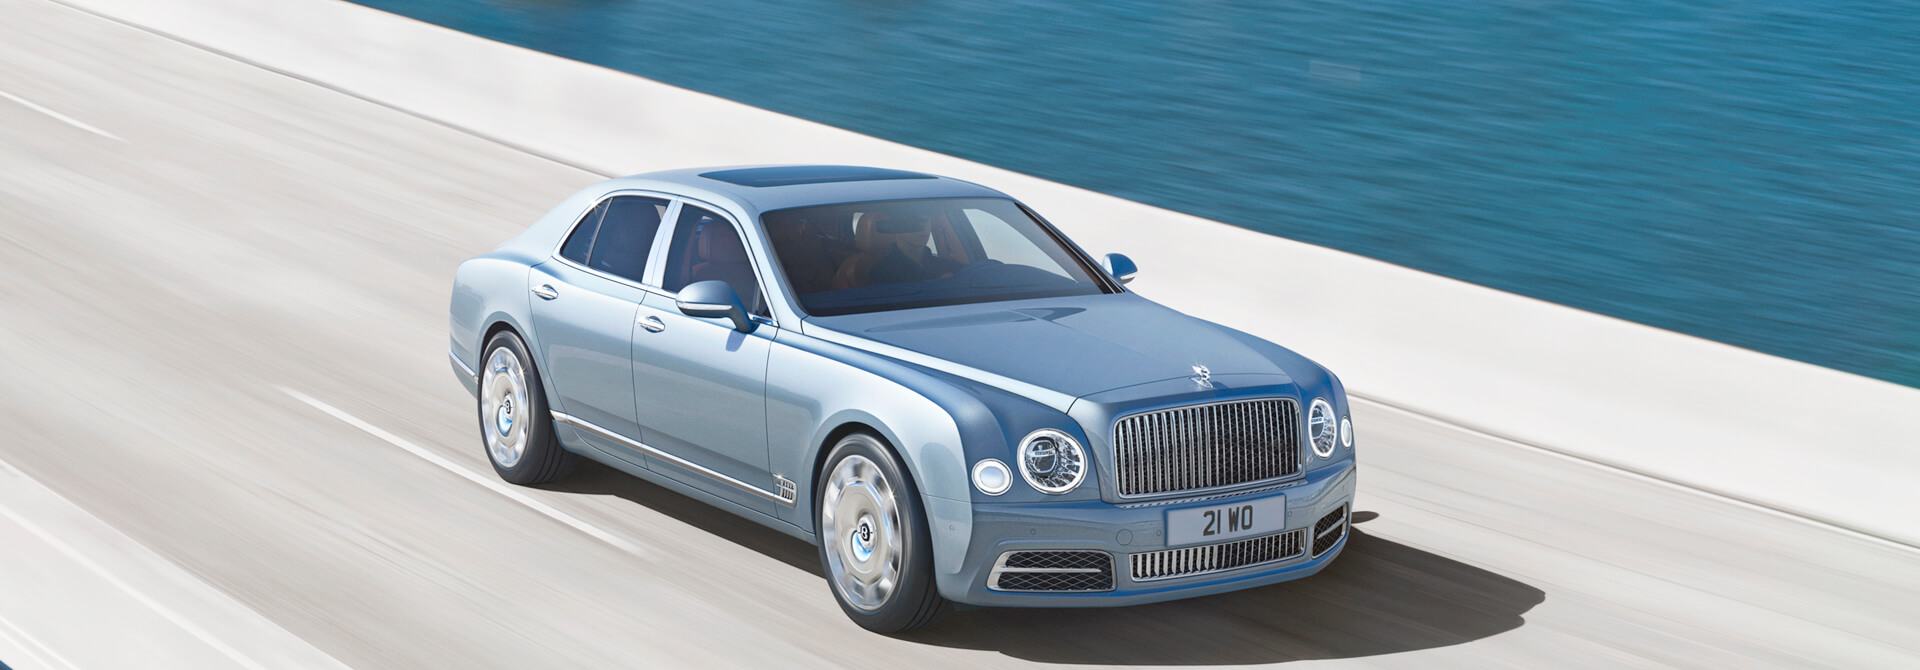 Bentley Flying Spur V8 chính hãng giá từ 18 tỷ đồng  VnExpress